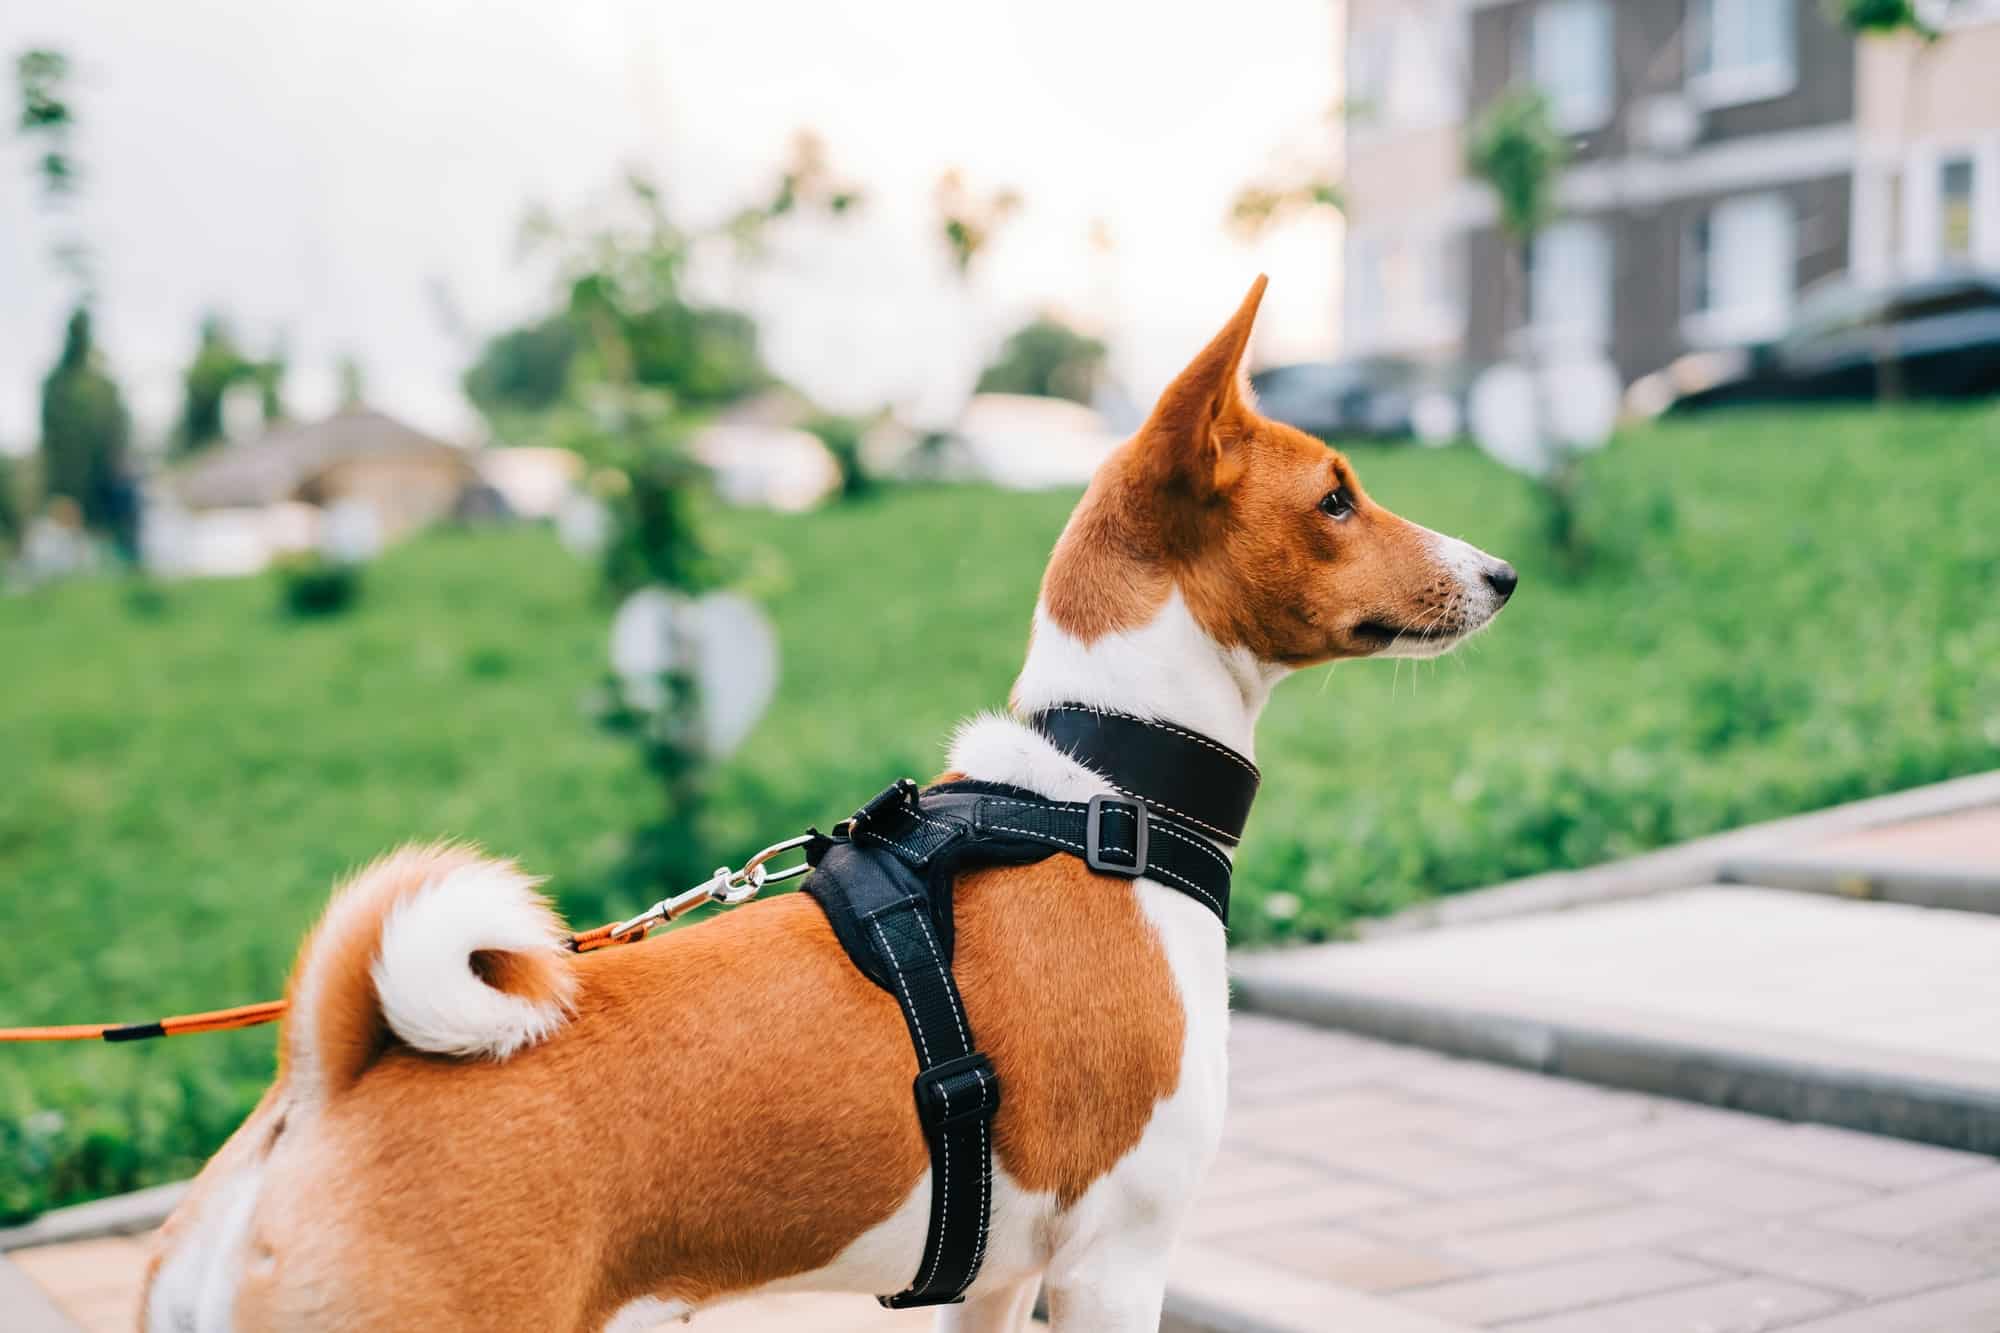 Pourquoi des accessoires colorés de qualité pour balader votre chien ?